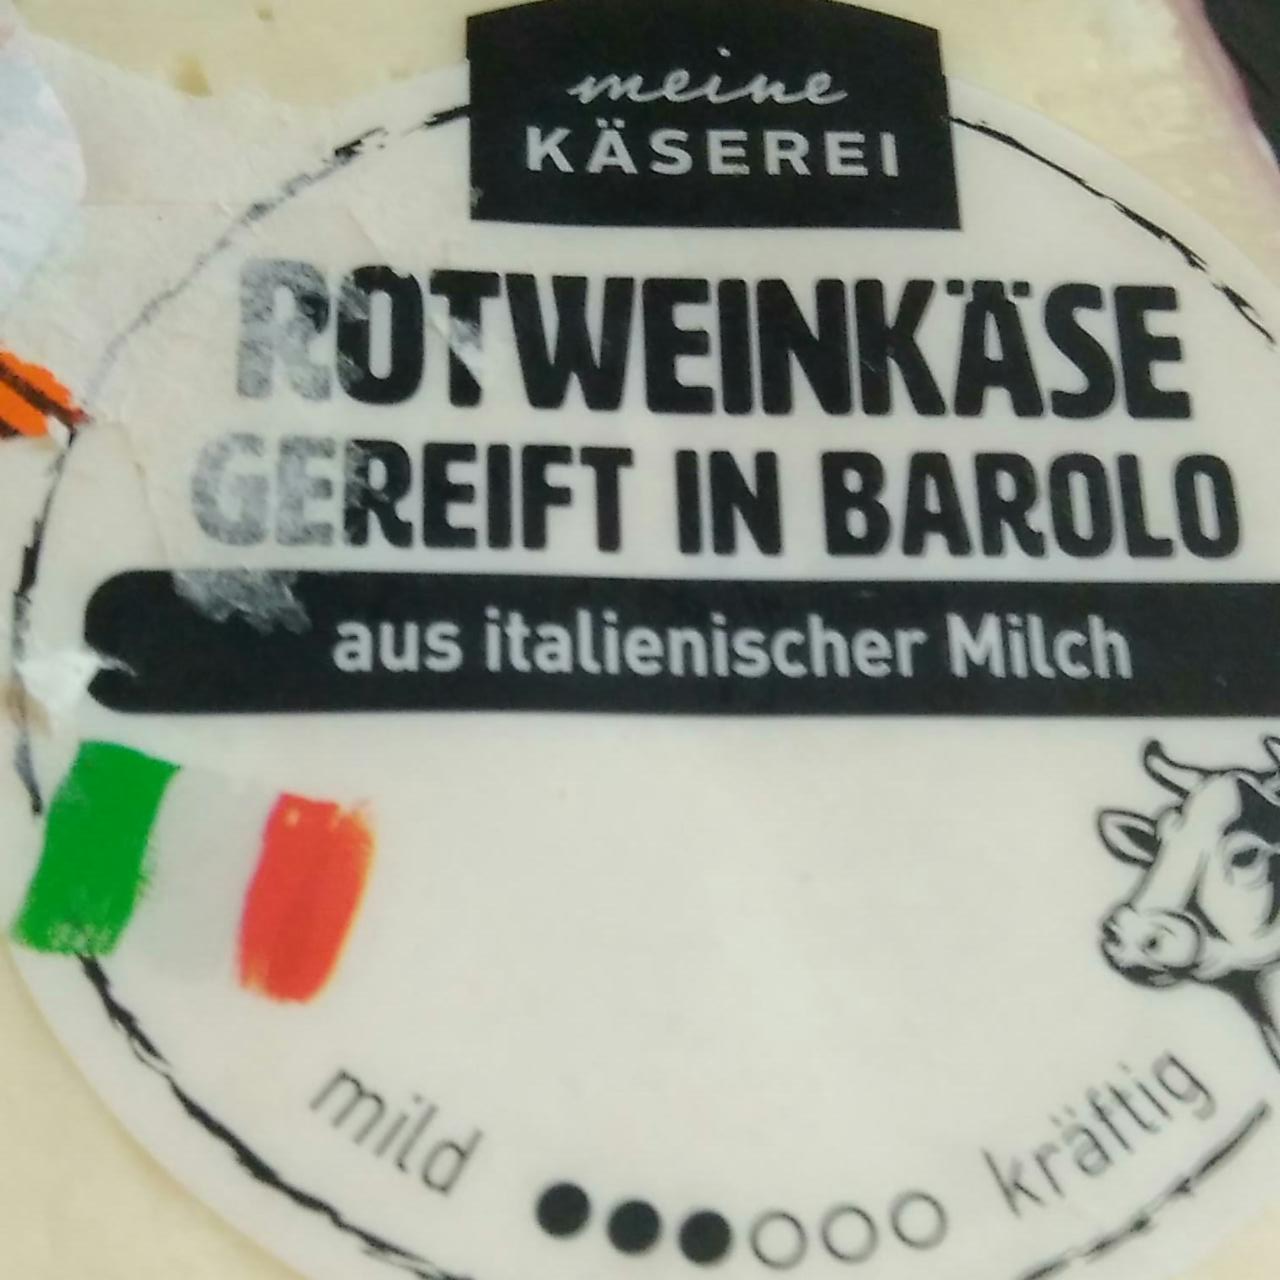 Fotografie - Rotweinkäse gereift in barolo aus italienischer Milch Meine Käserei